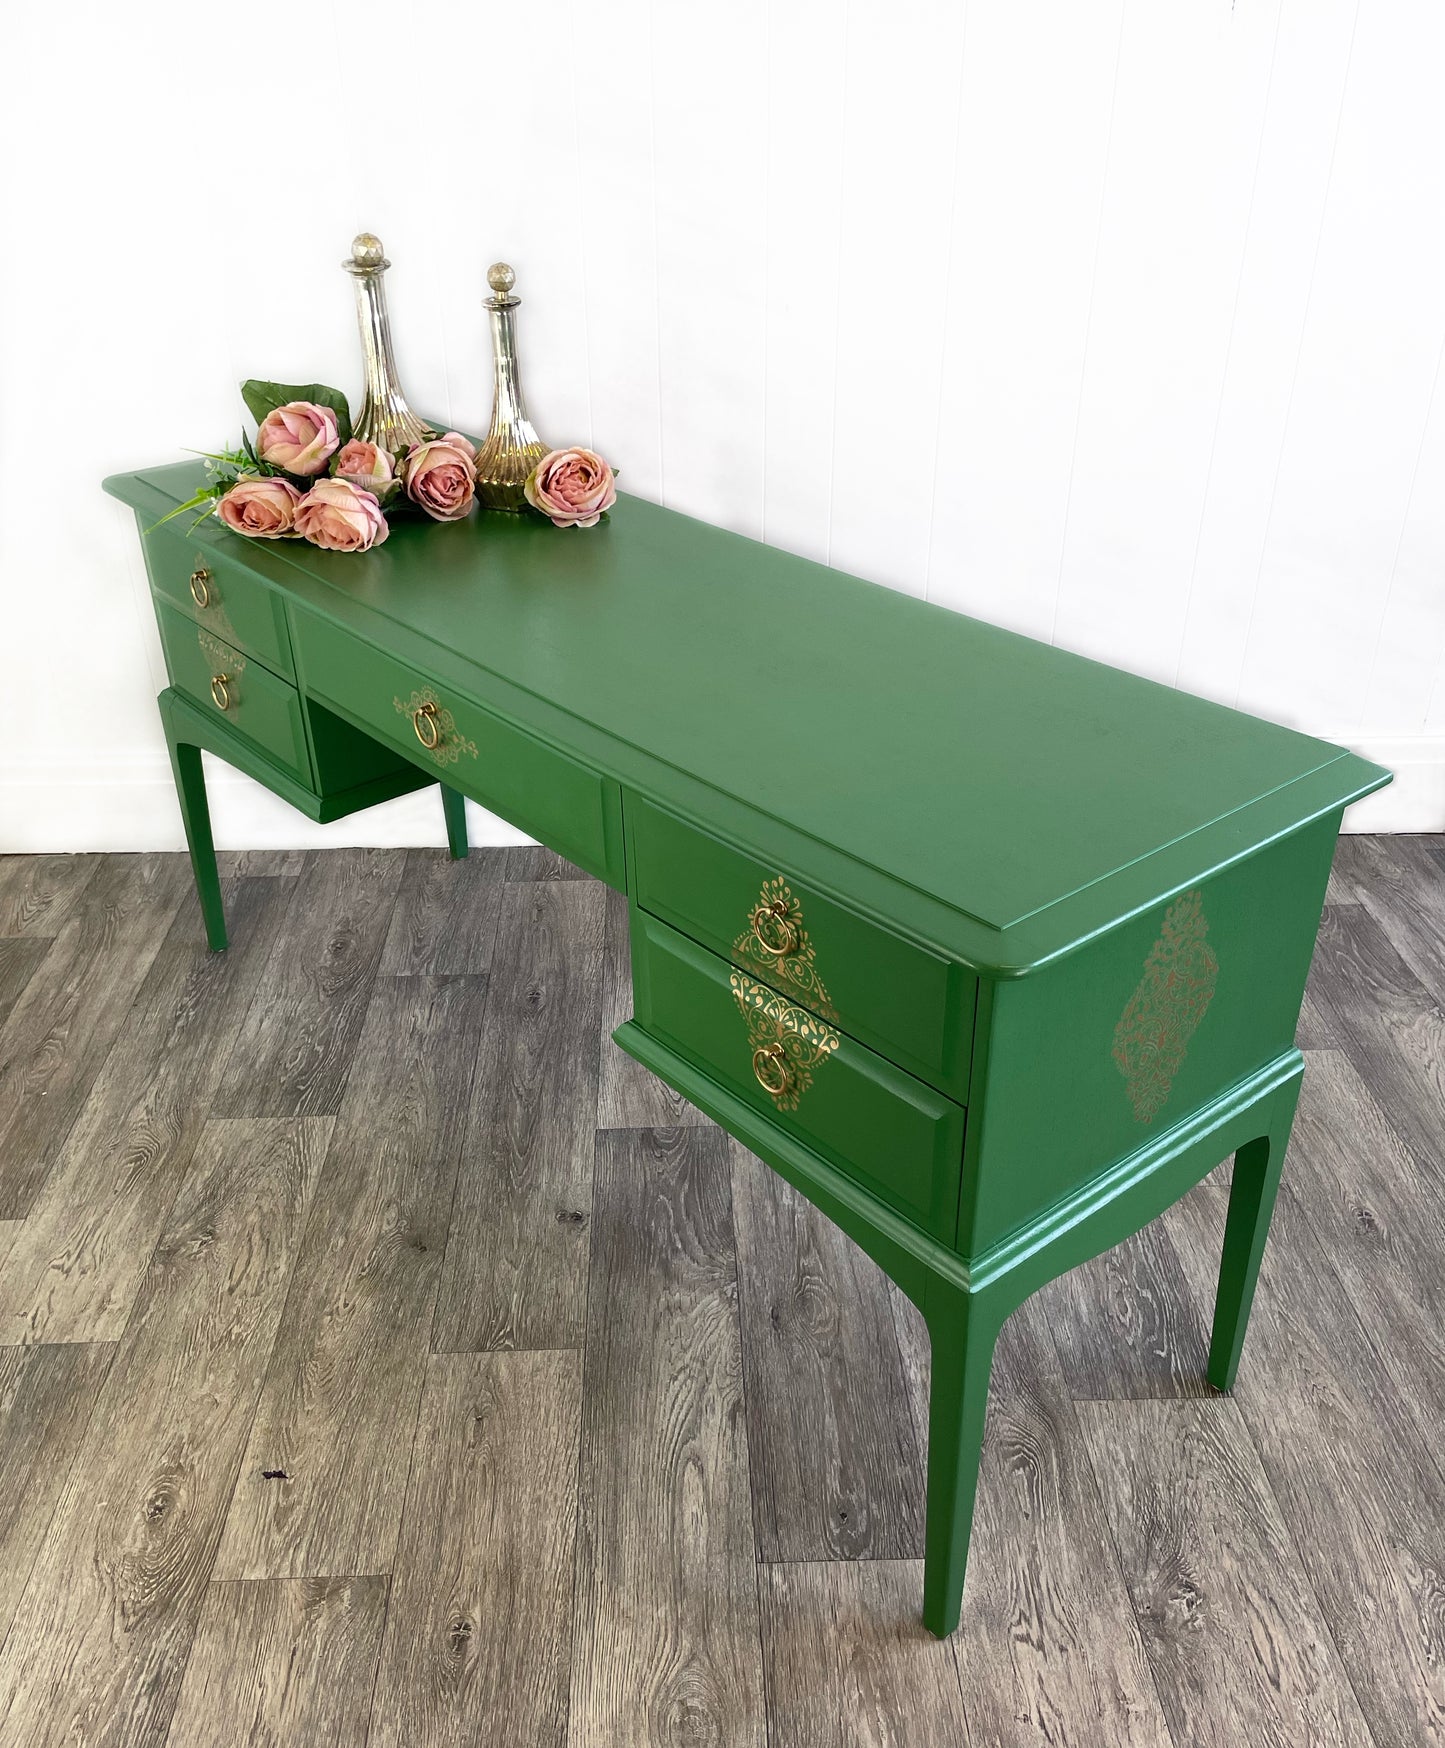 Stag Minstrel Green Dressing Table, 5 Drawer MCM Desk